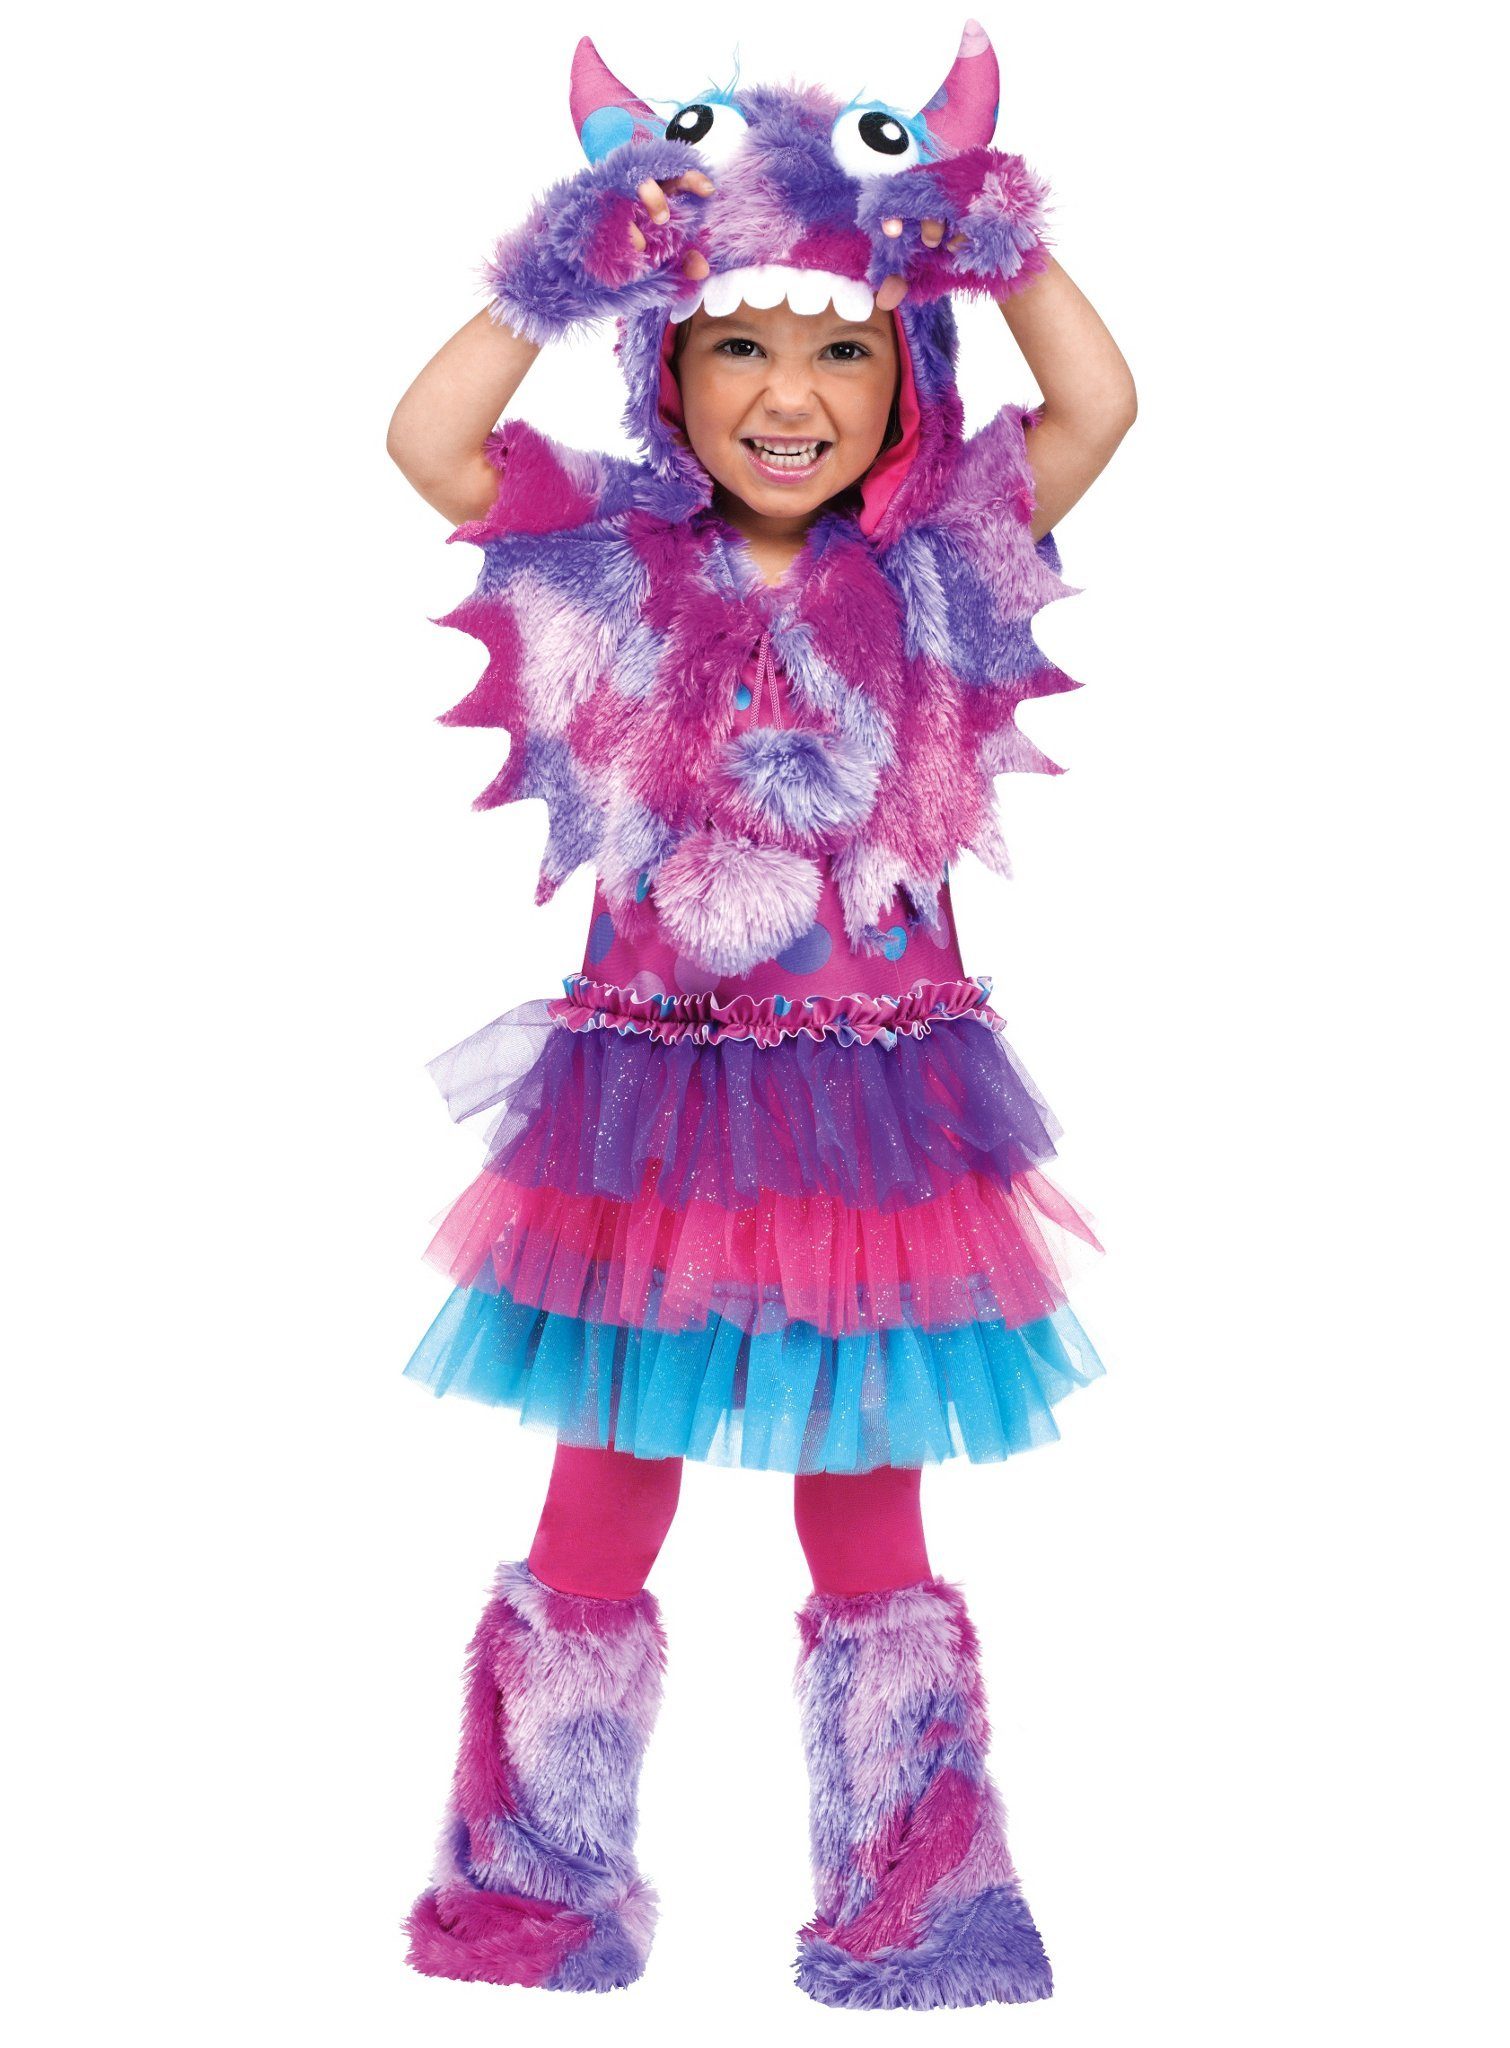 Fun World Kostüm »Flauschiges Grummel-Monster violett«, Das süßeste Monster  weit und breit – tolle Kostümidee zu Halloween! online kaufen | OTTO